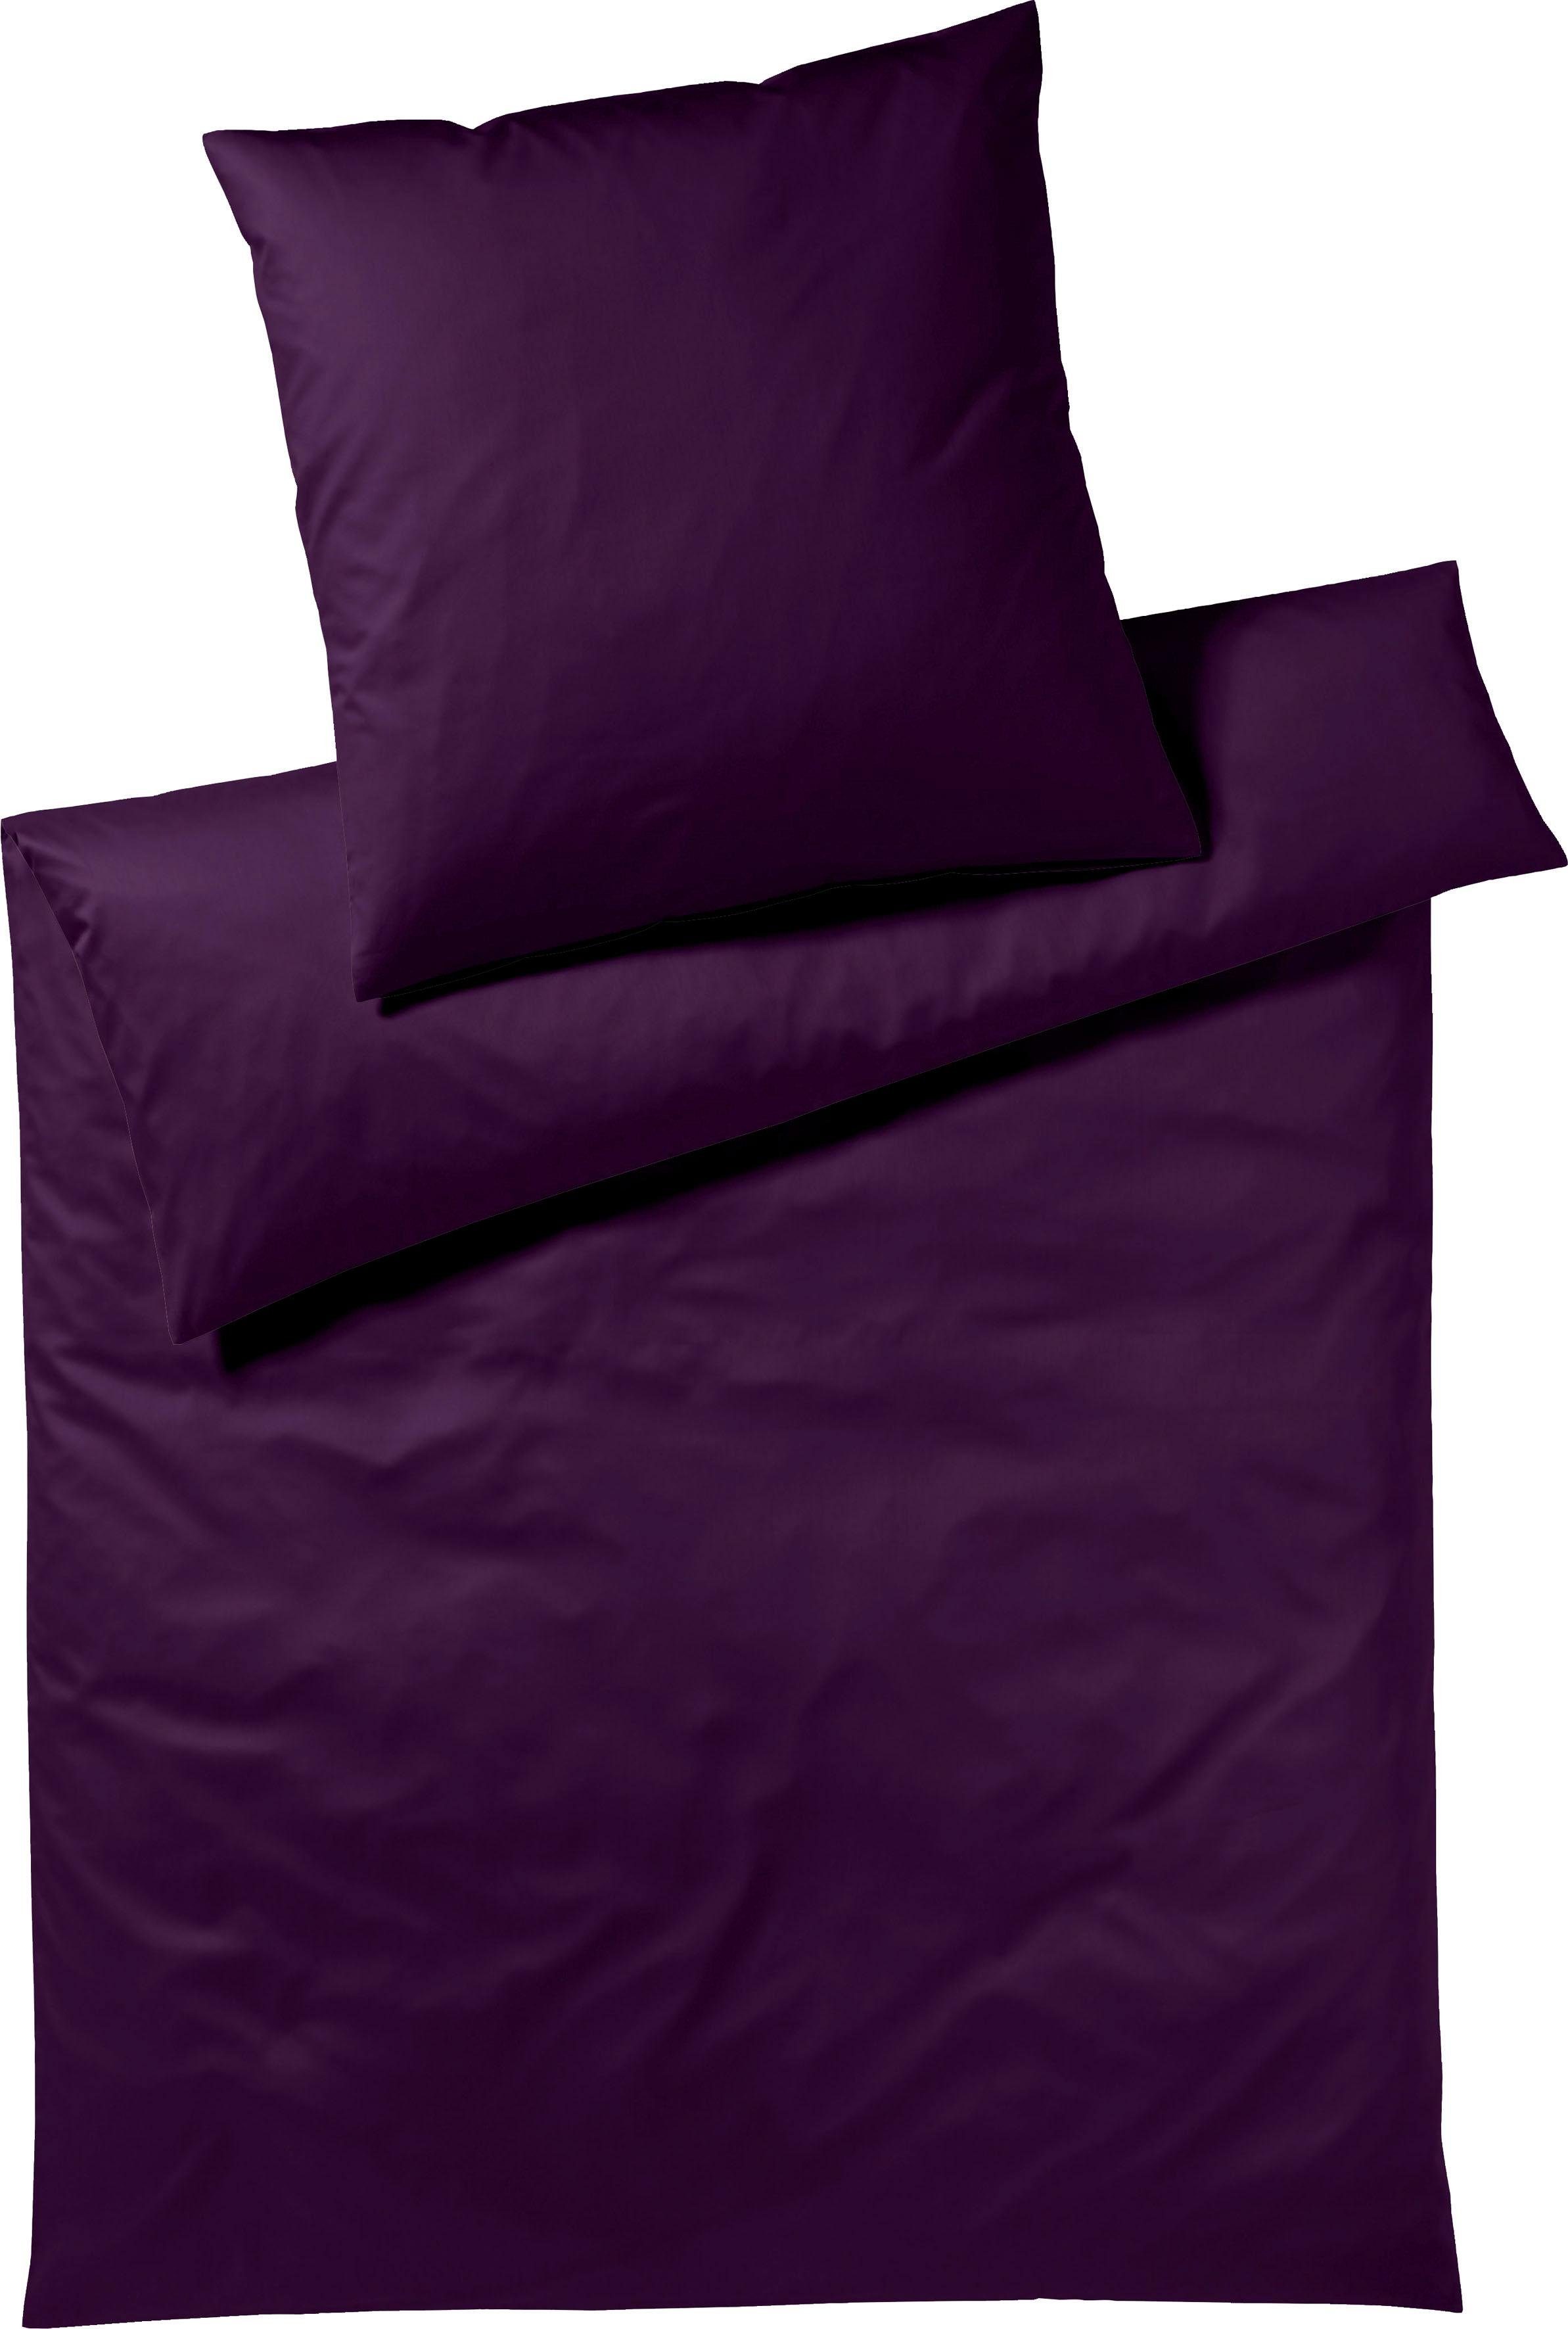 Bettwäsche Pure & Simple Uni in Gr. 135x200, 155x220 oder 200x200 cm, Yes for Bed, Mako-Satin, 2 teilig, Bettwäsche aus Baumwolle, zeitlose Bettwäsche mit seidigem Glanz